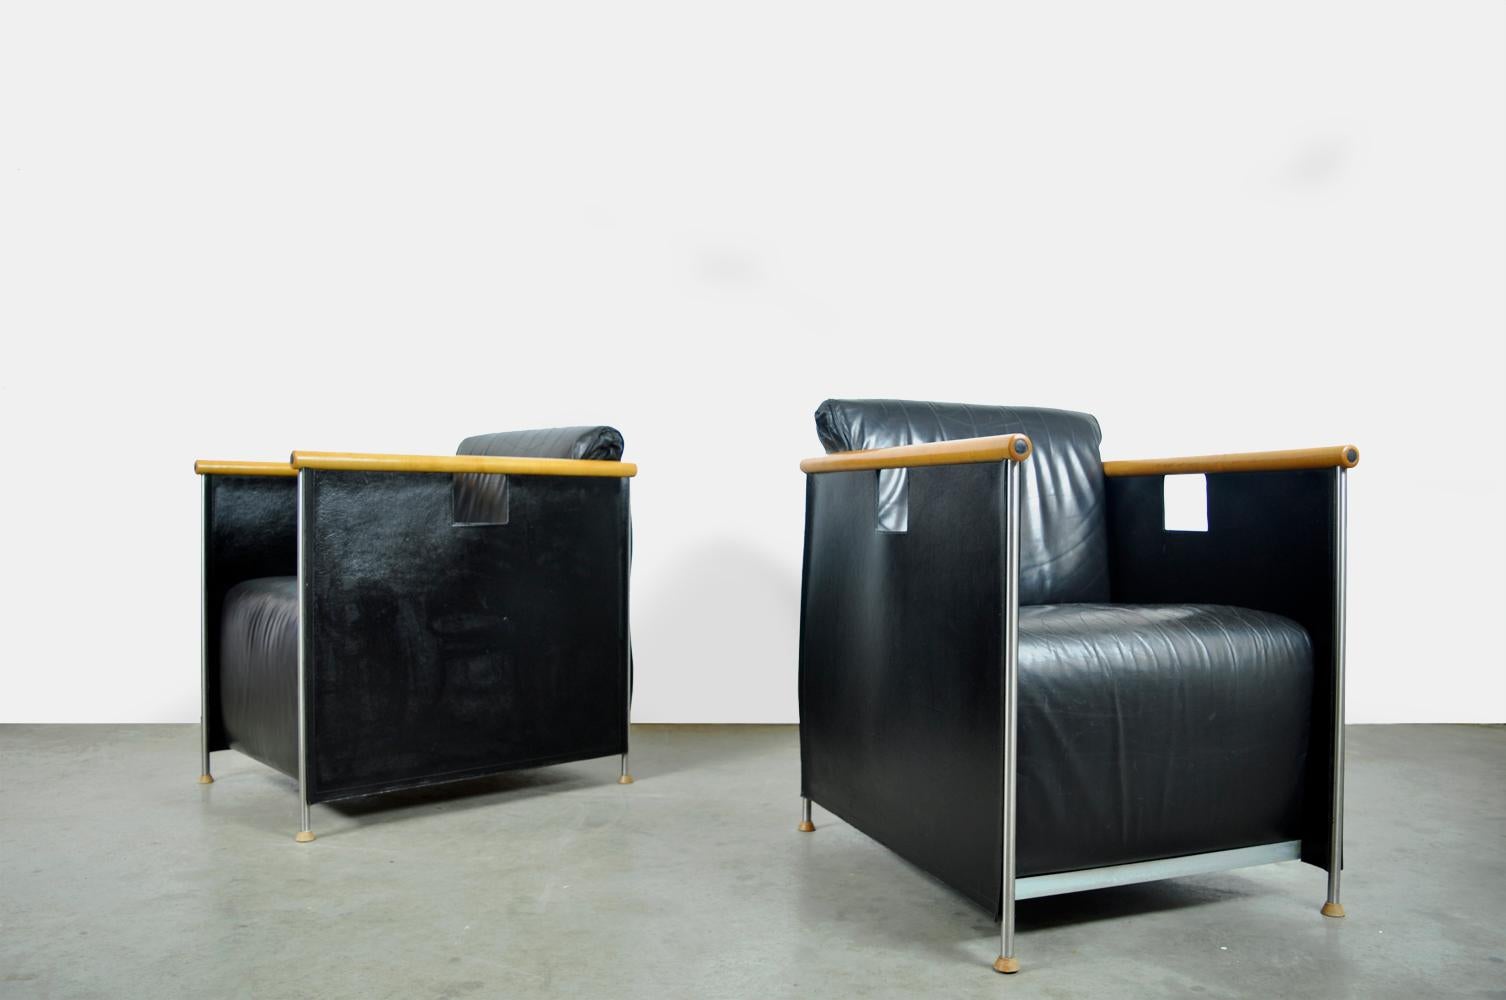 Fauteuils en cuir conçus par le duo Mazairac & boonzaaijer et produits dans les années 1980 par Castelijn, Pays-Bas.
Fauteuils modernes des années 1980 avec coussins en cuir noir, accoudoirs en hêtre, pieds métalliques élancés avec pieds en bois et